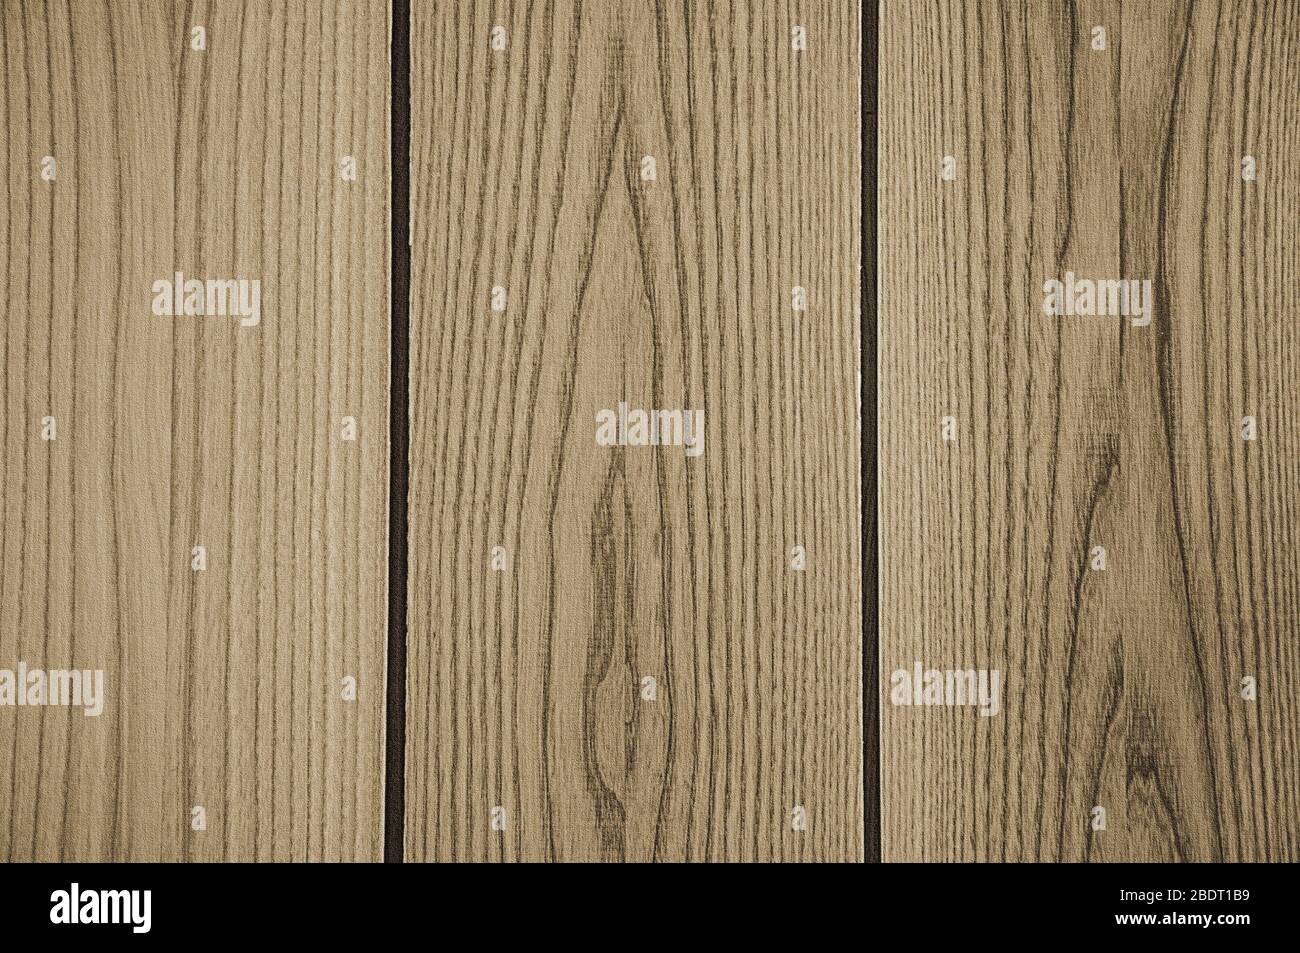 Die Struktur der Holzbretter. Grauer Hintergrund und große Linien. Stockfoto